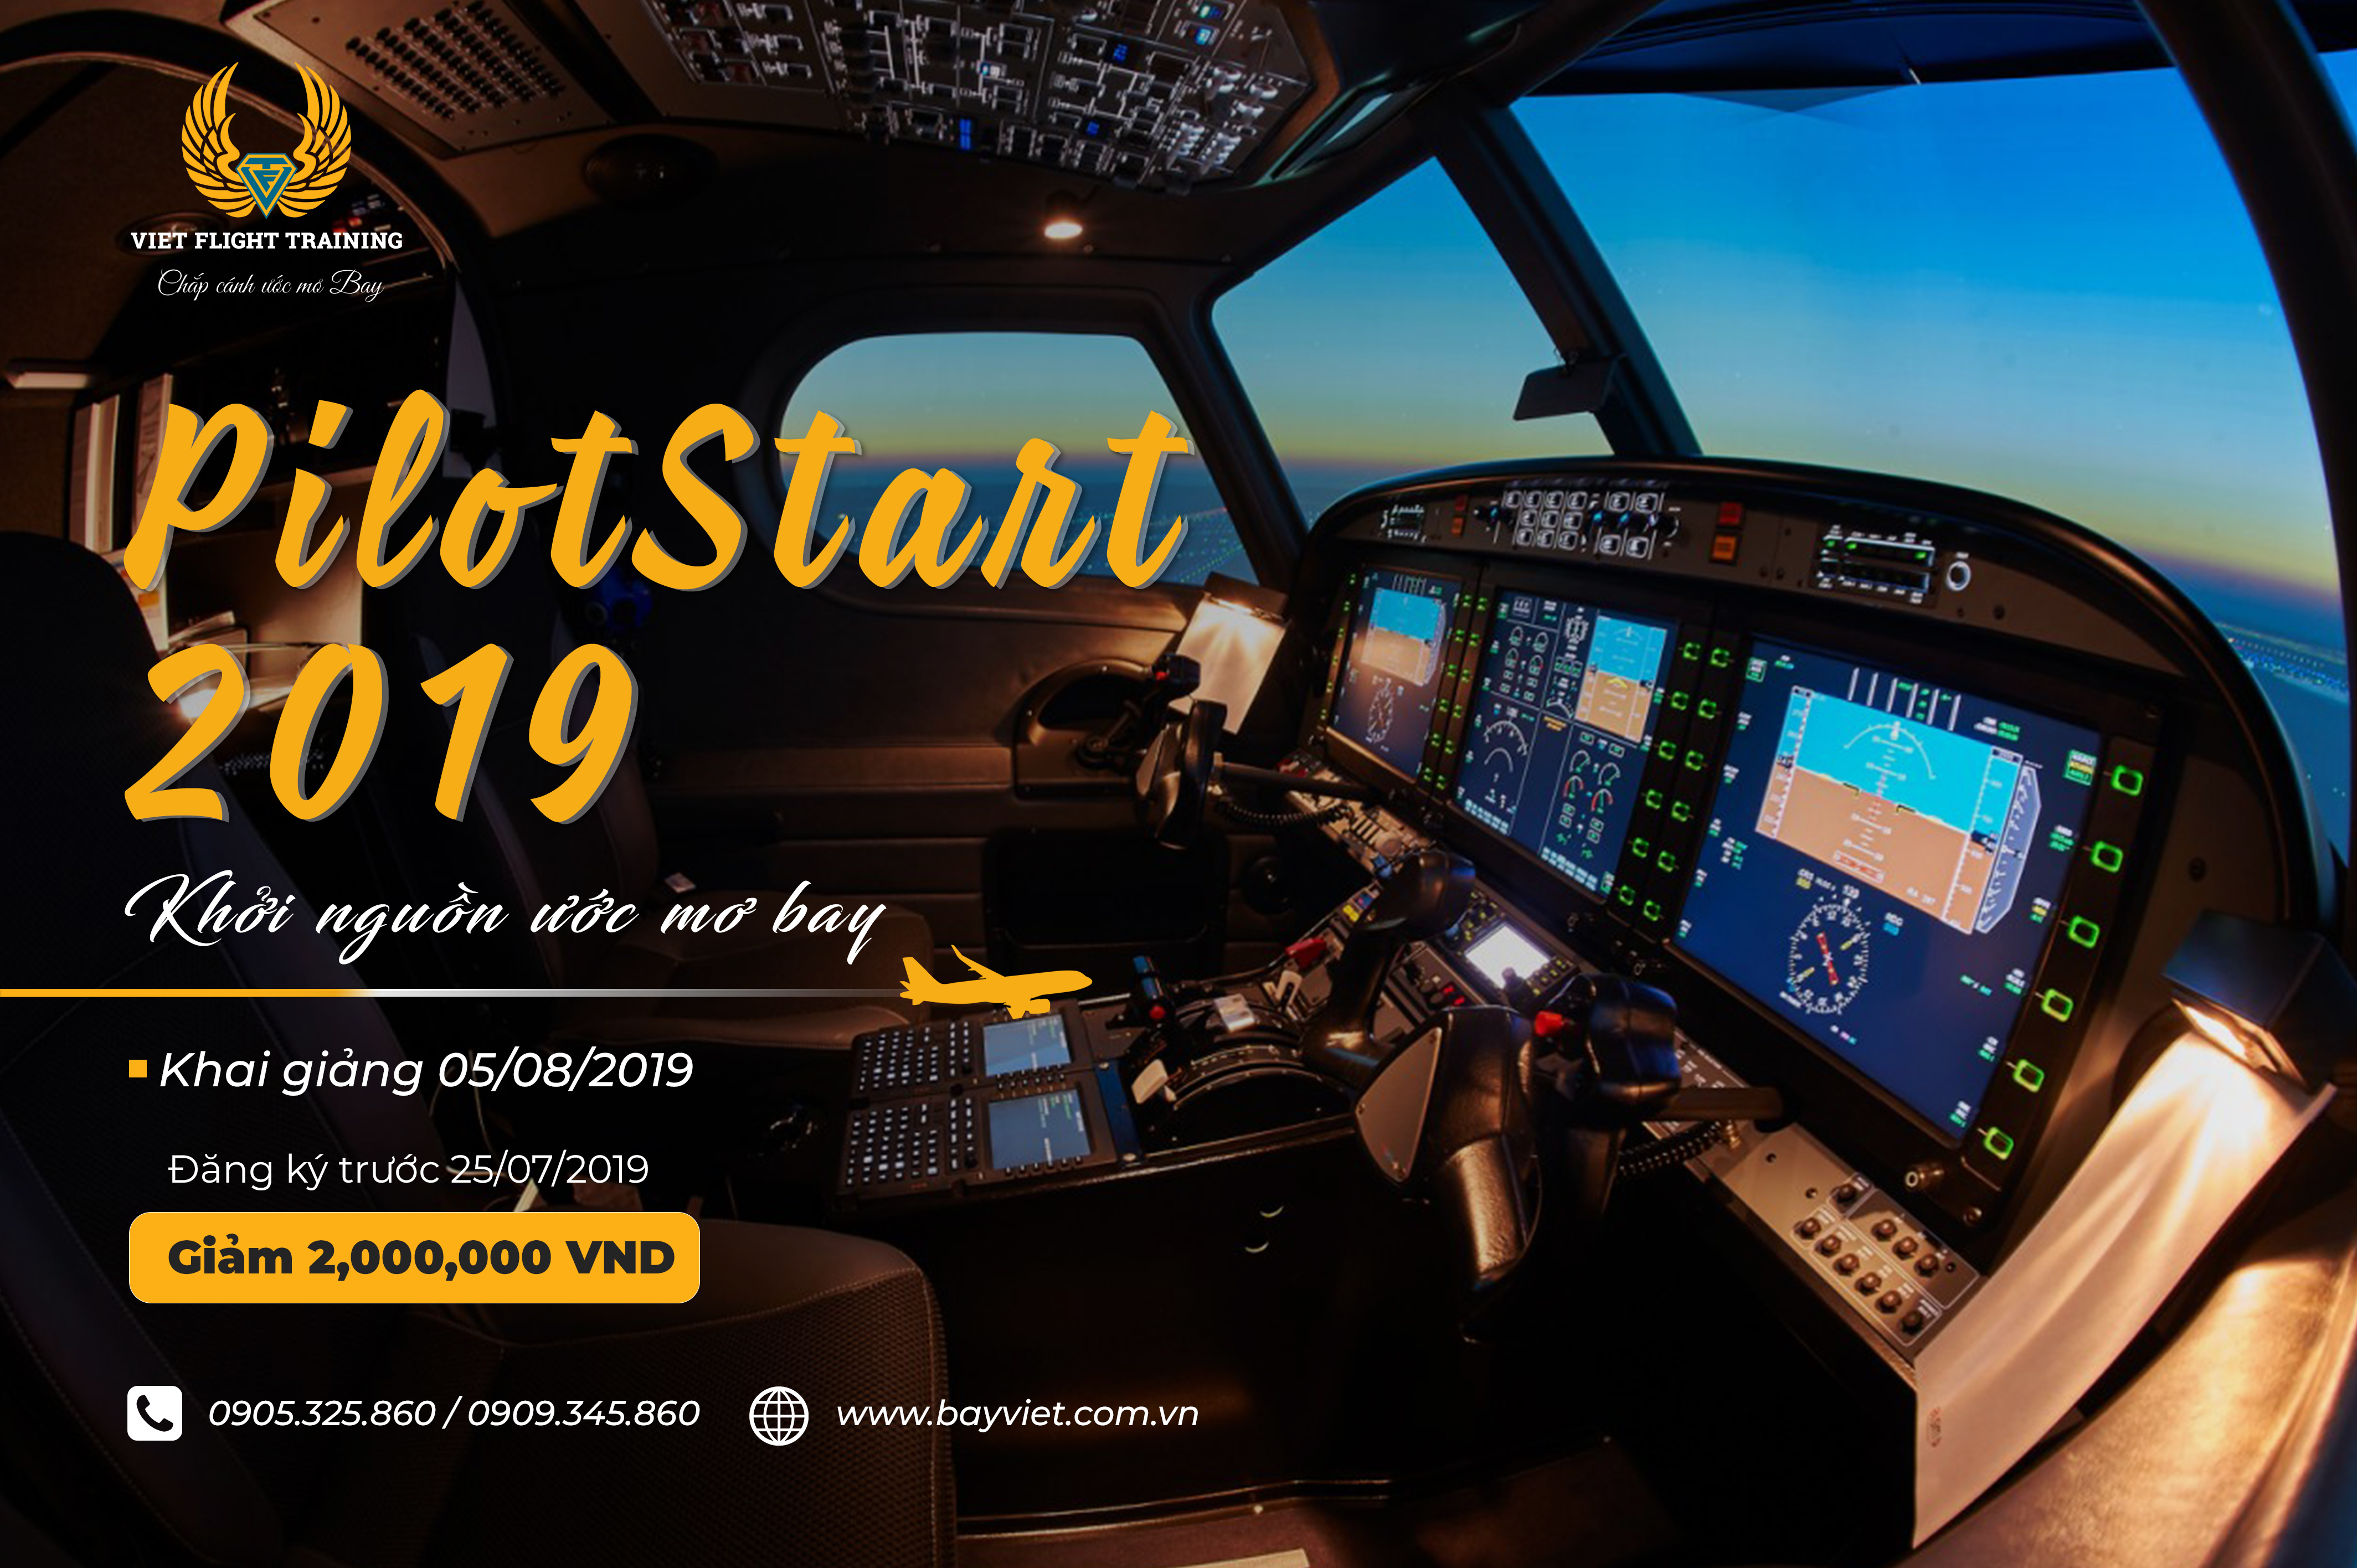 Thông báo khai giảng lớp “PilotStart 2019”